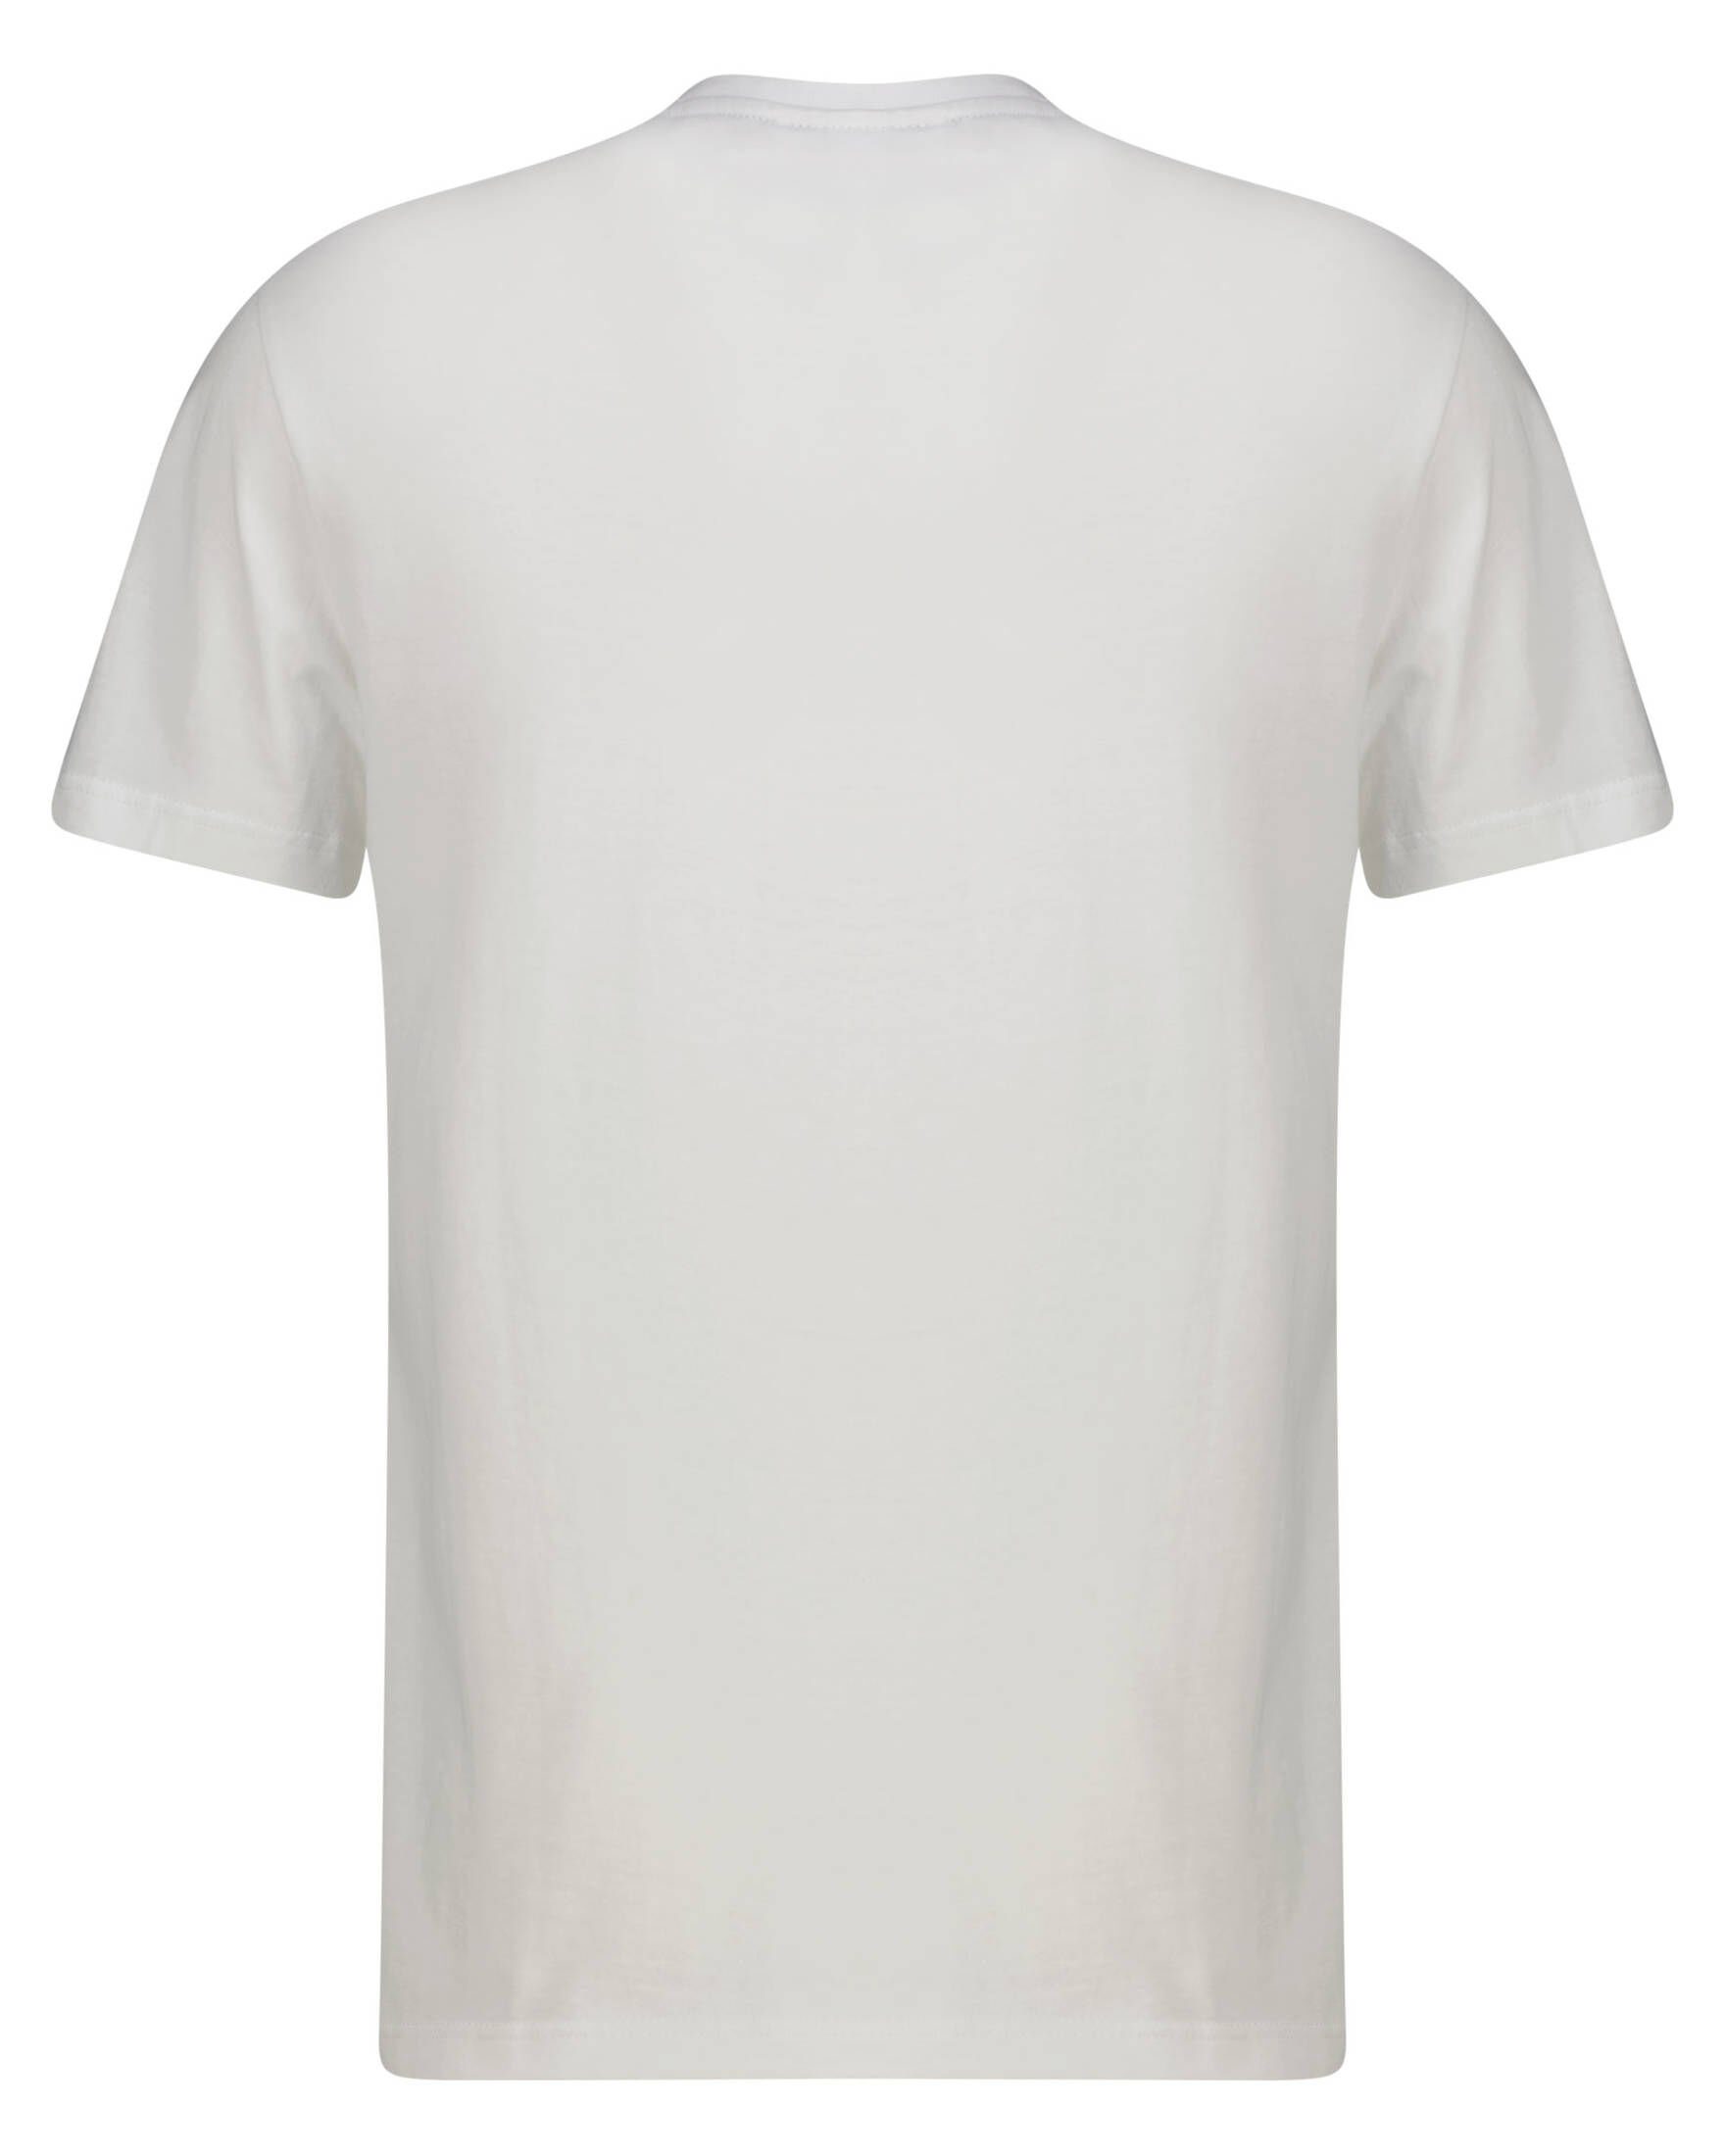 Lacoste T-Shirt mit beschriftetem Baumwollqualität Aus den angenehmer Kontrastband Schultern, an